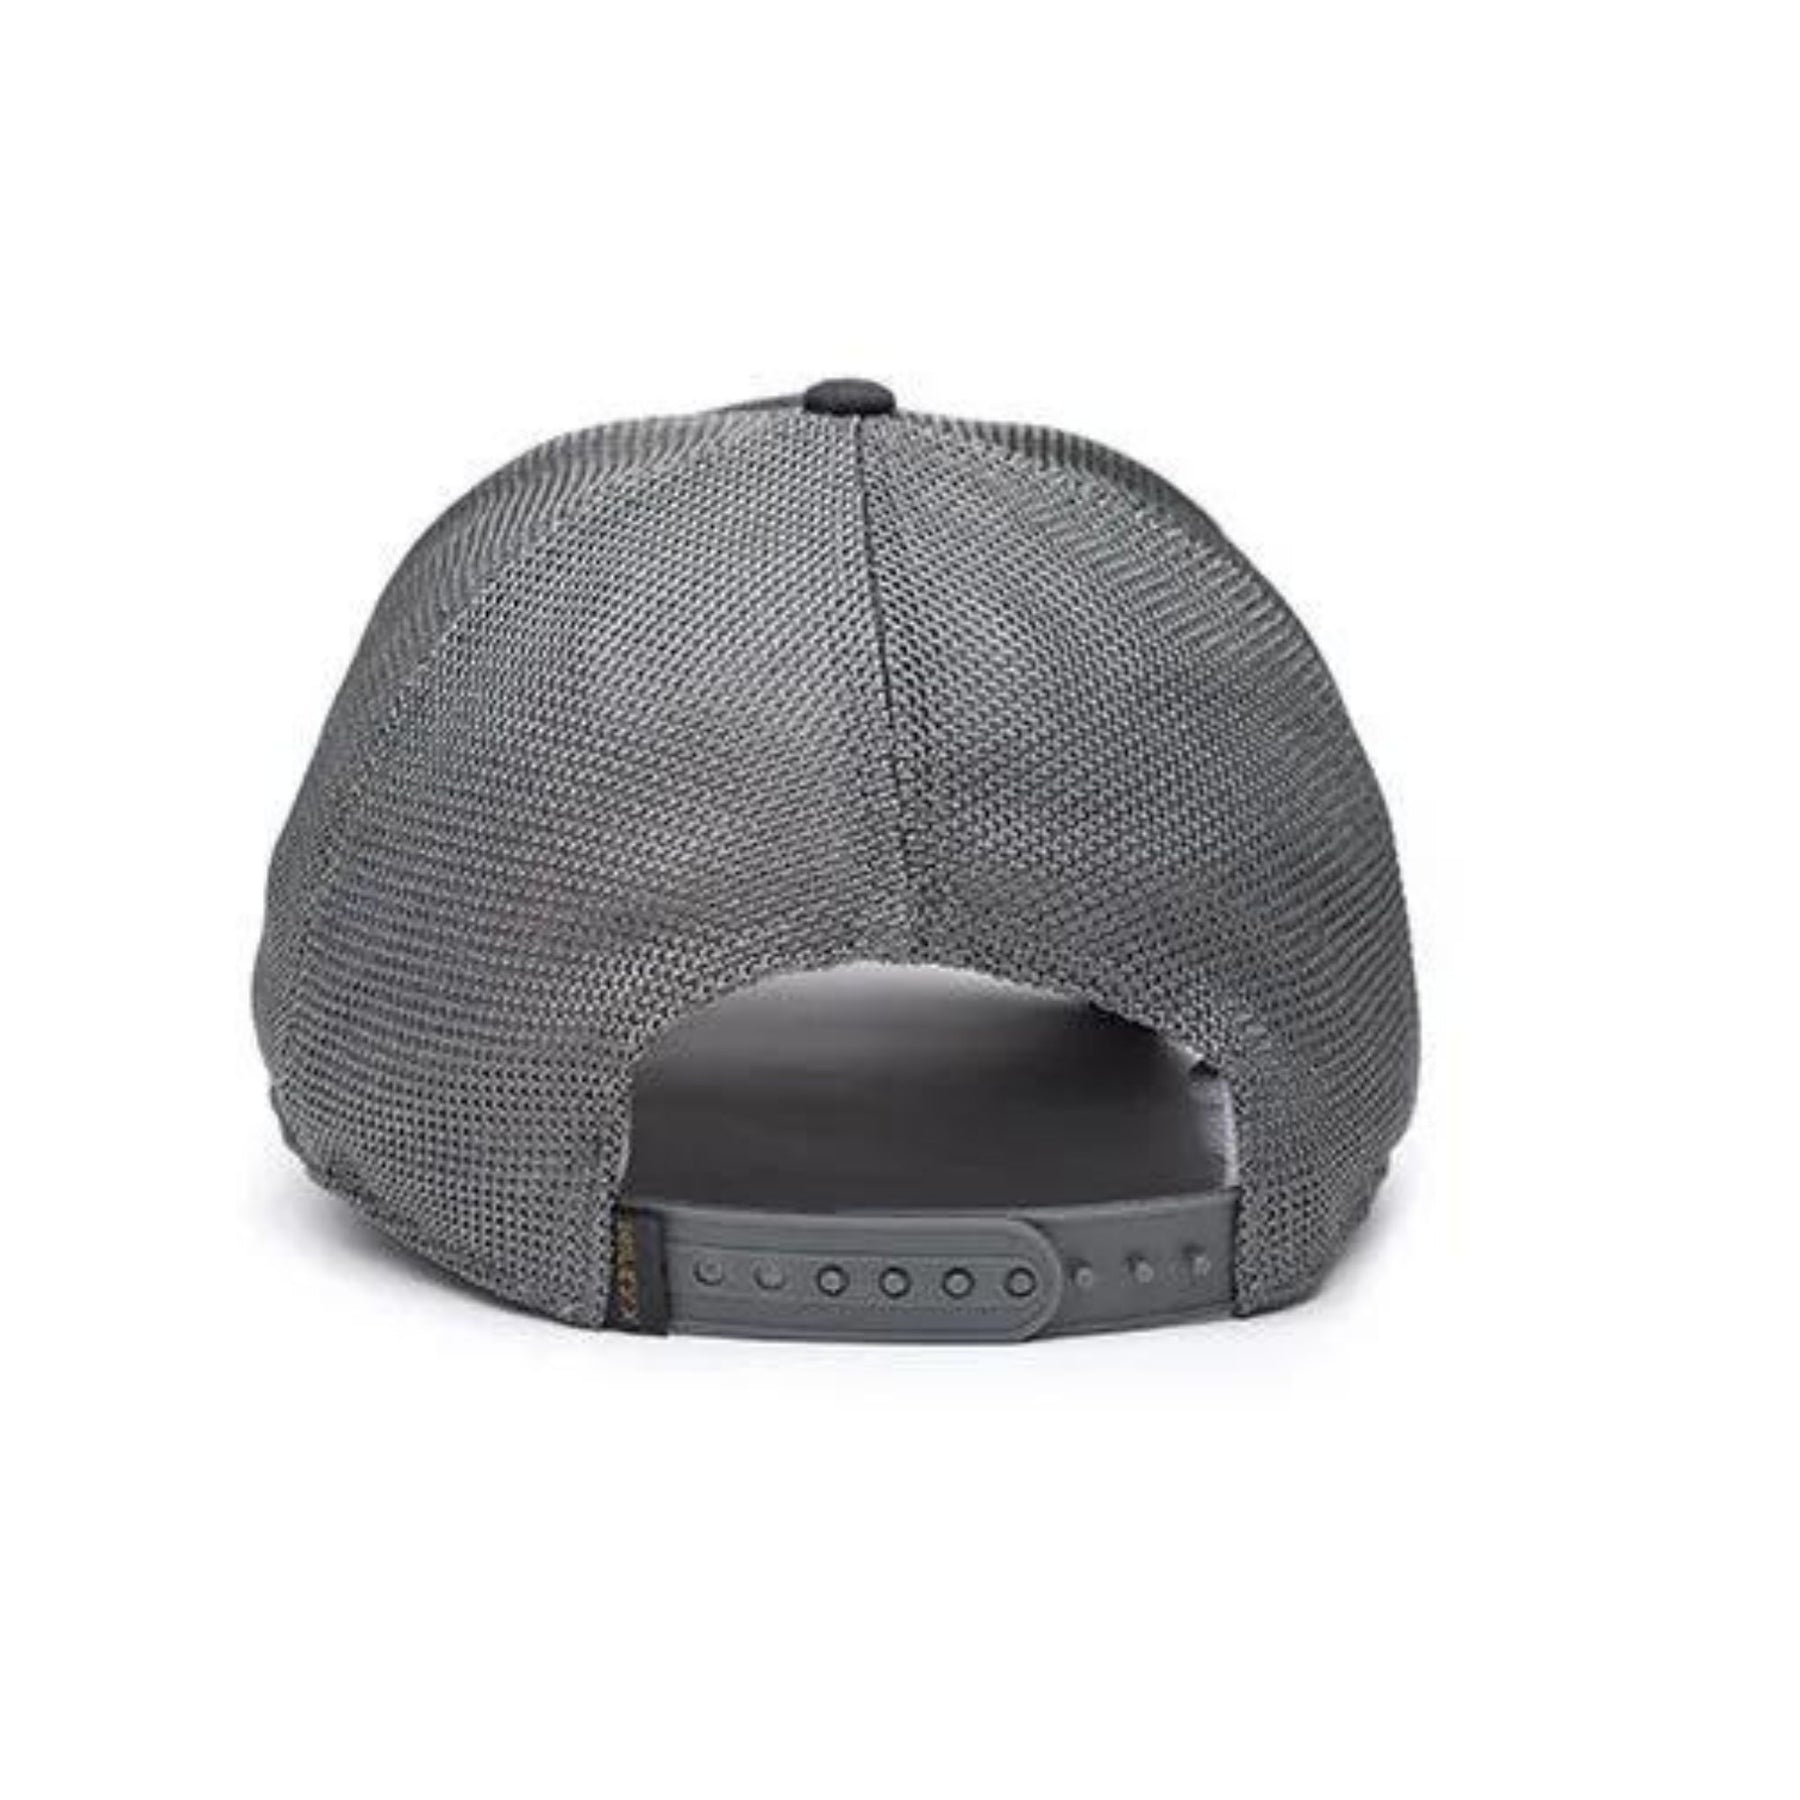 WILEYX | WX TRUCKER CAP - Cappello